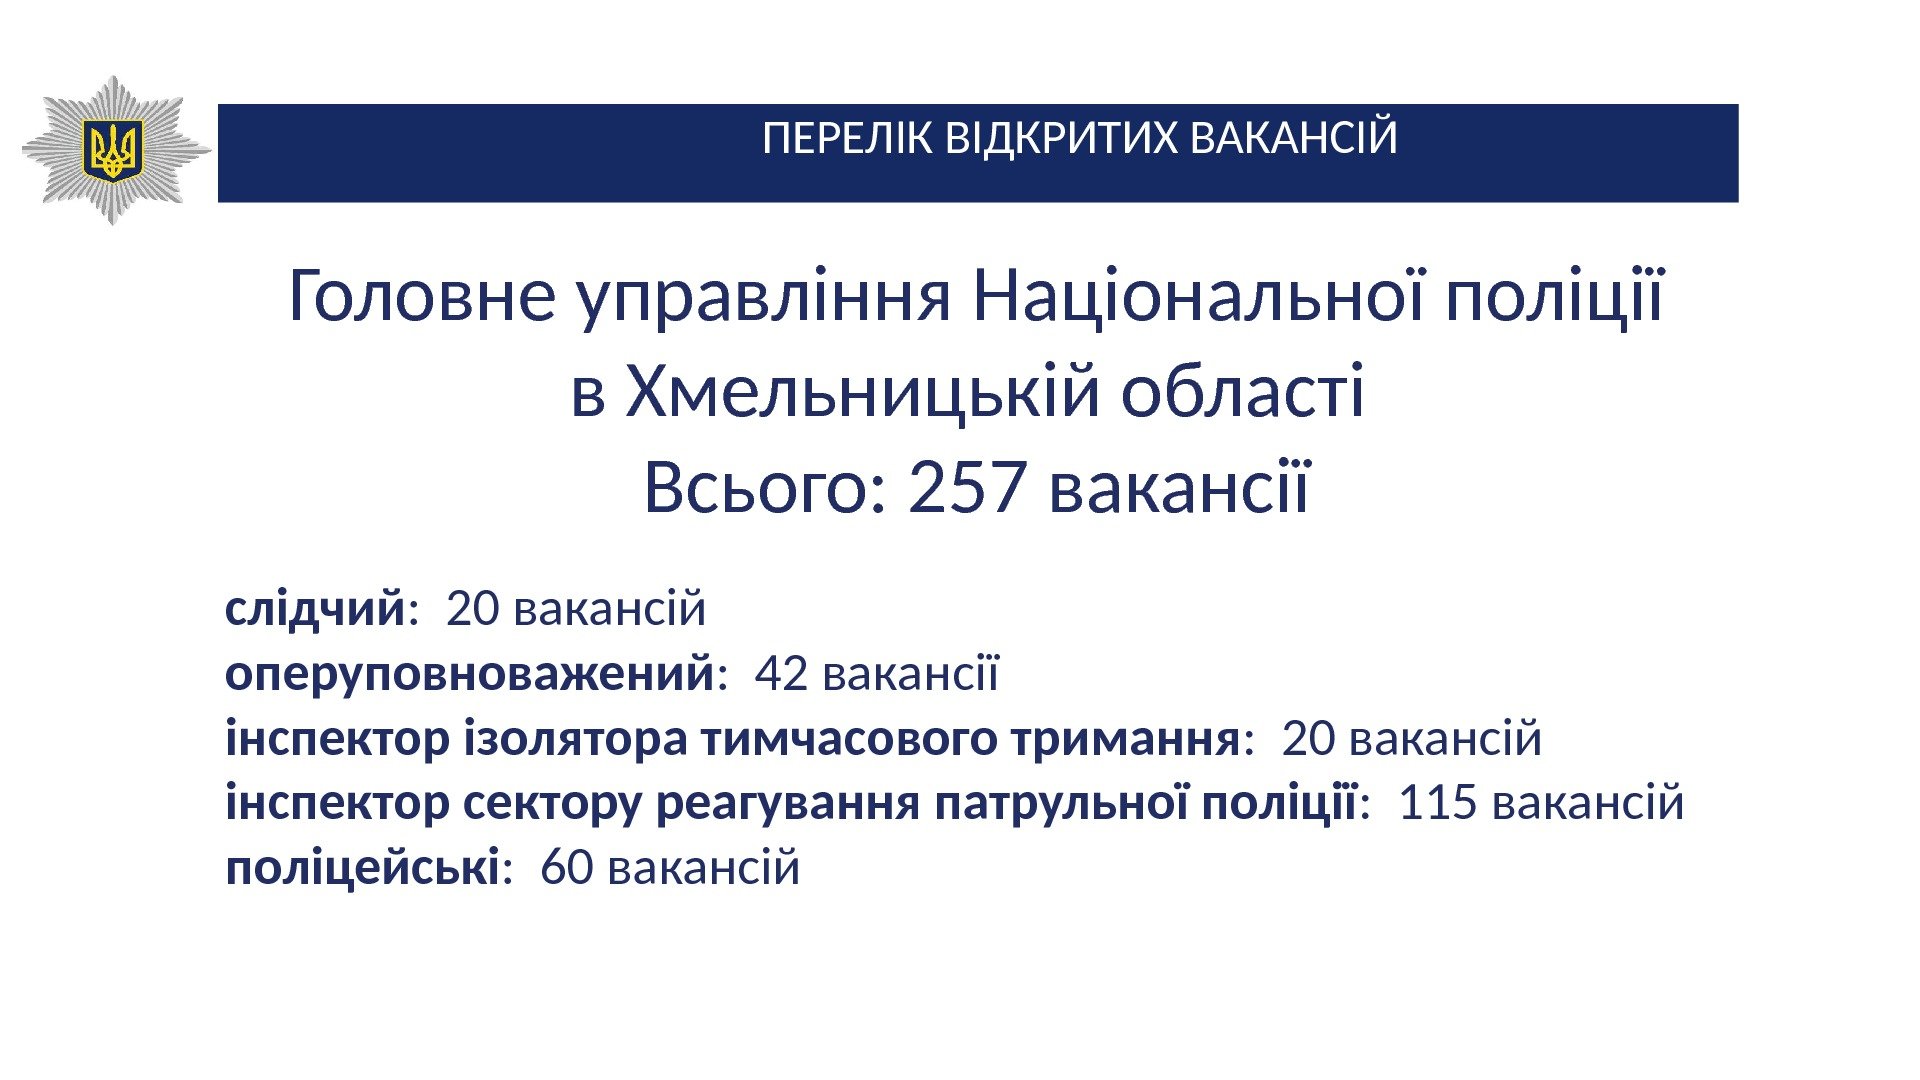 ПЕРЕЛІК ВІДКРИТИХ ВАКАНСІЙ Головне управління Національної поліції в Хмельницькій області Всього: 257 вакансії слідчий